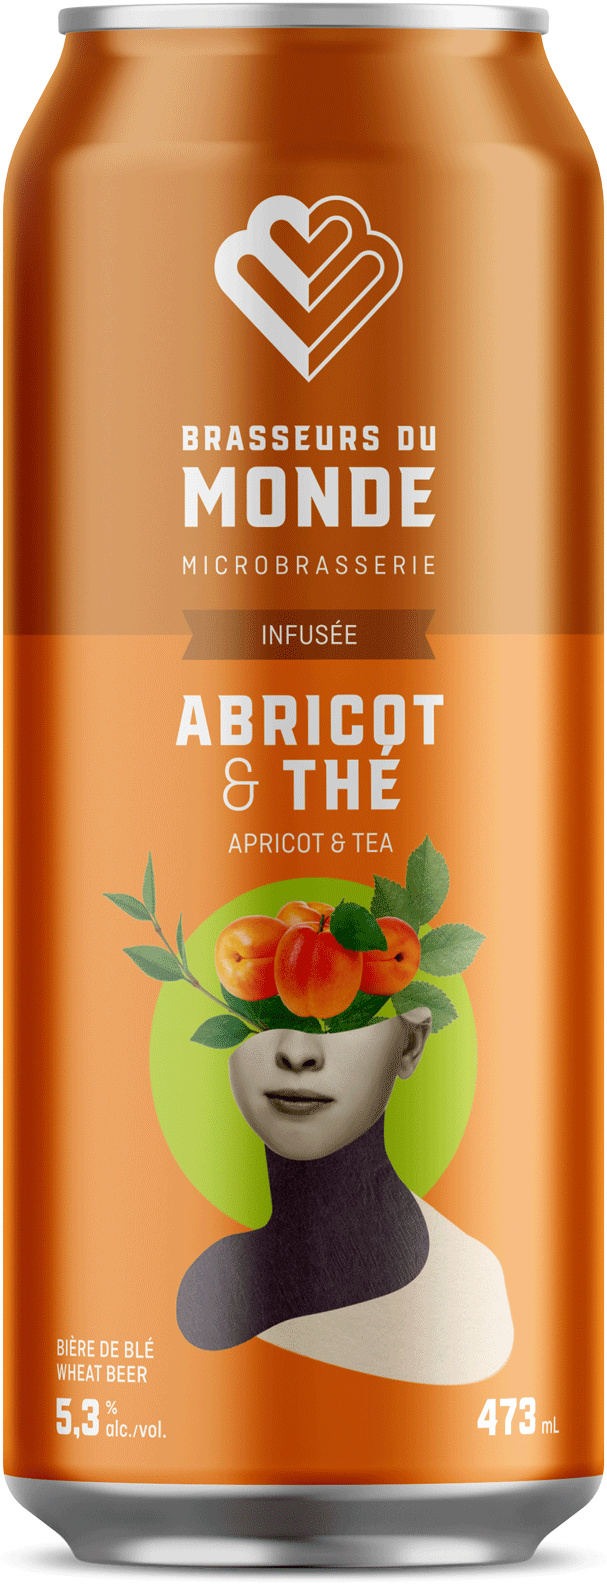 Bière infusée abricot et thé - Infused Beer Abricot and Tea Brasseurs du Monde